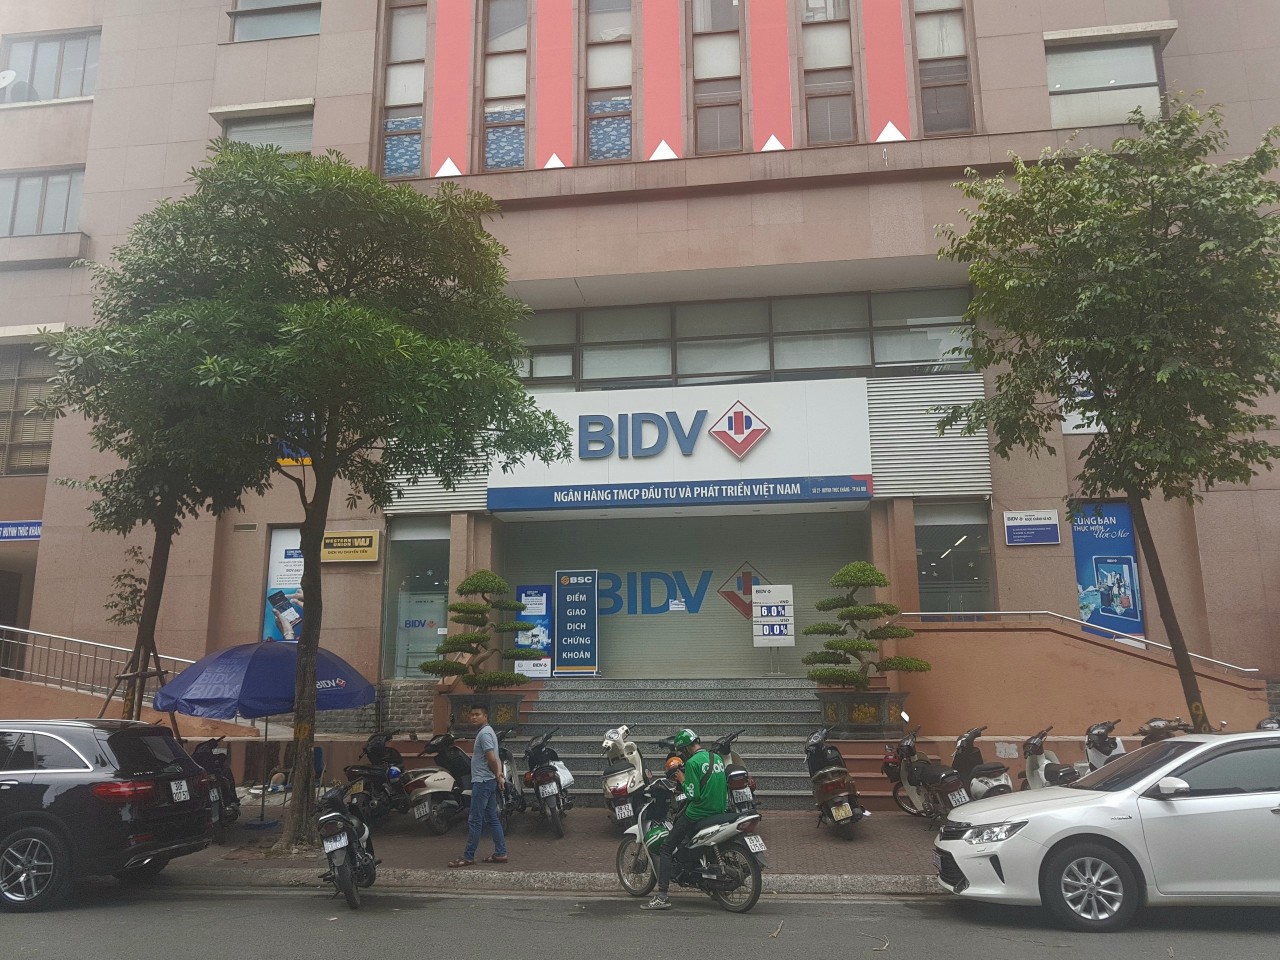 Cướp ngân hàng tại BIDV chi nhánh Ngọc Khánh - Hà Nội, thiệt hại ban đầu khoảng vài trăm triệu - Ảnh 1.